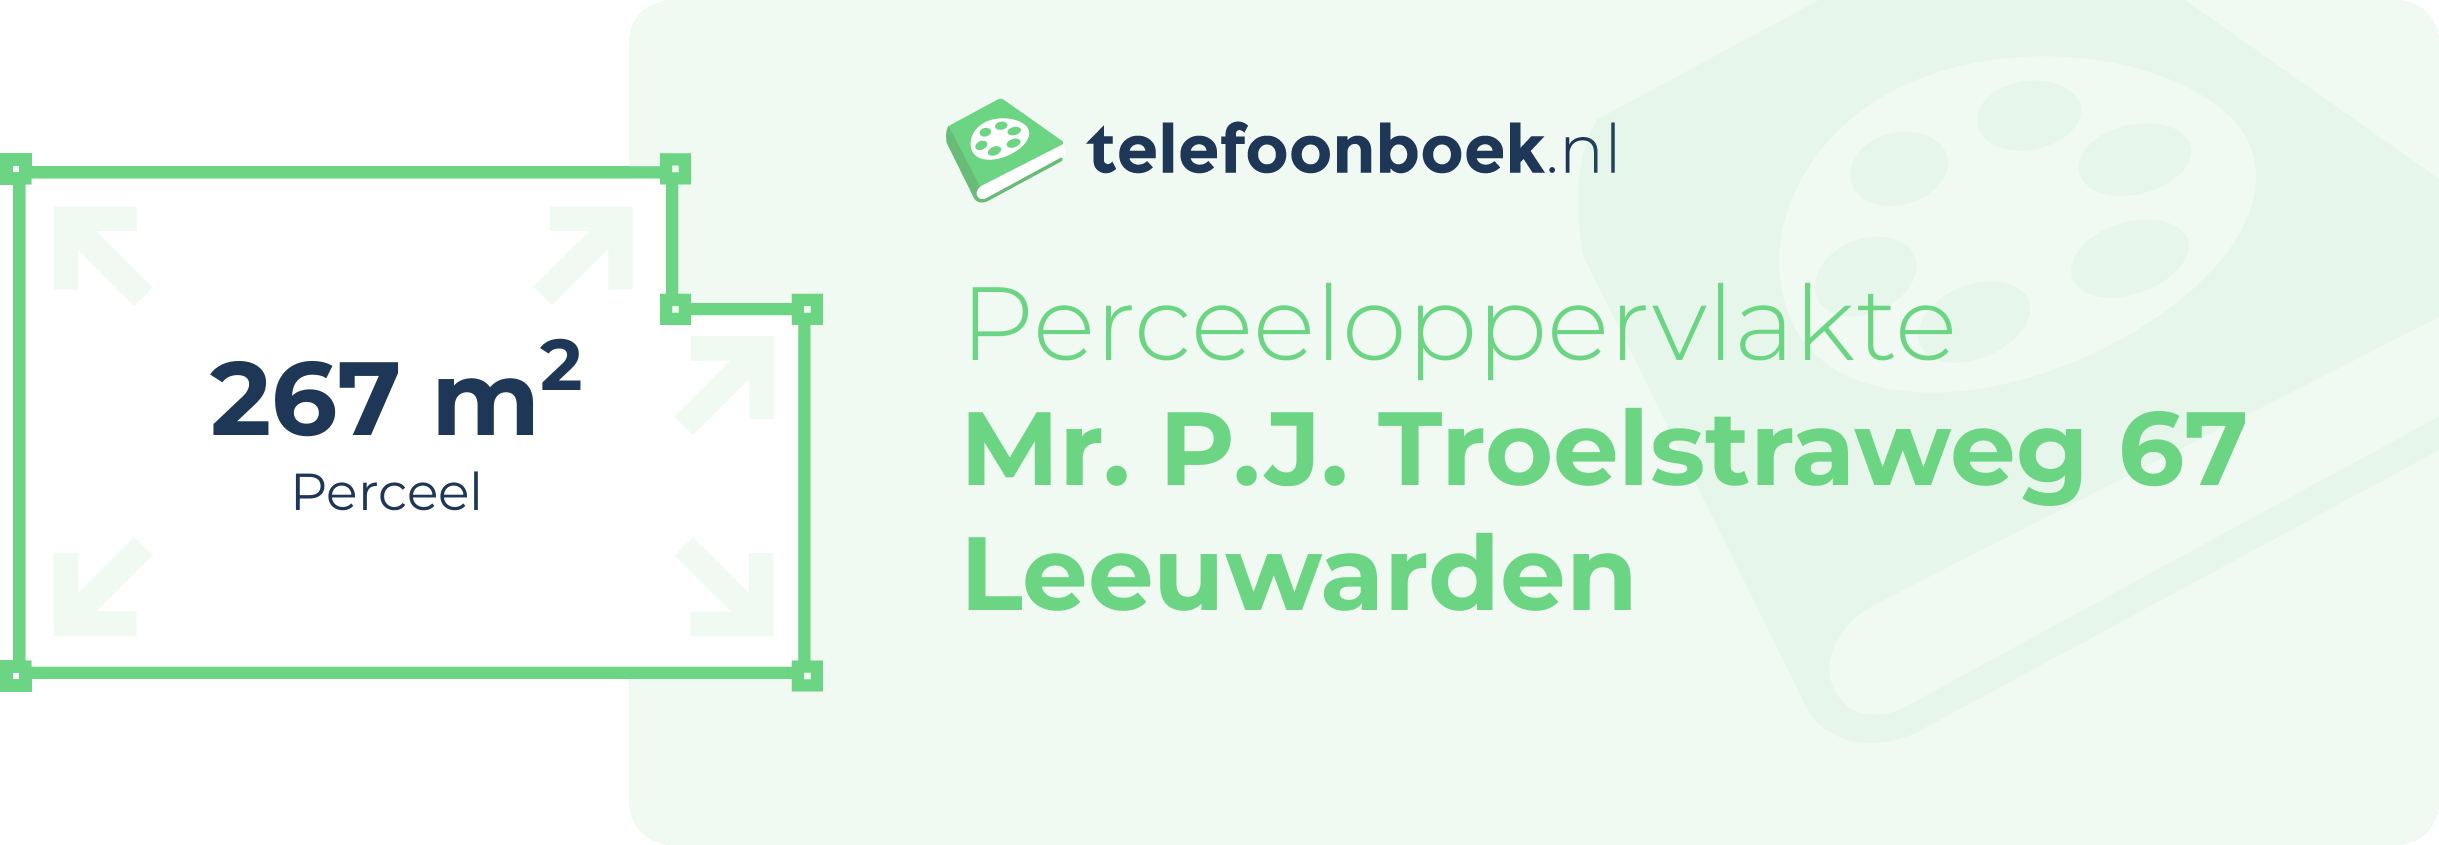 Perceeloppervlakte Mr. P.J. Troelstraweg 67 Leeuwarden